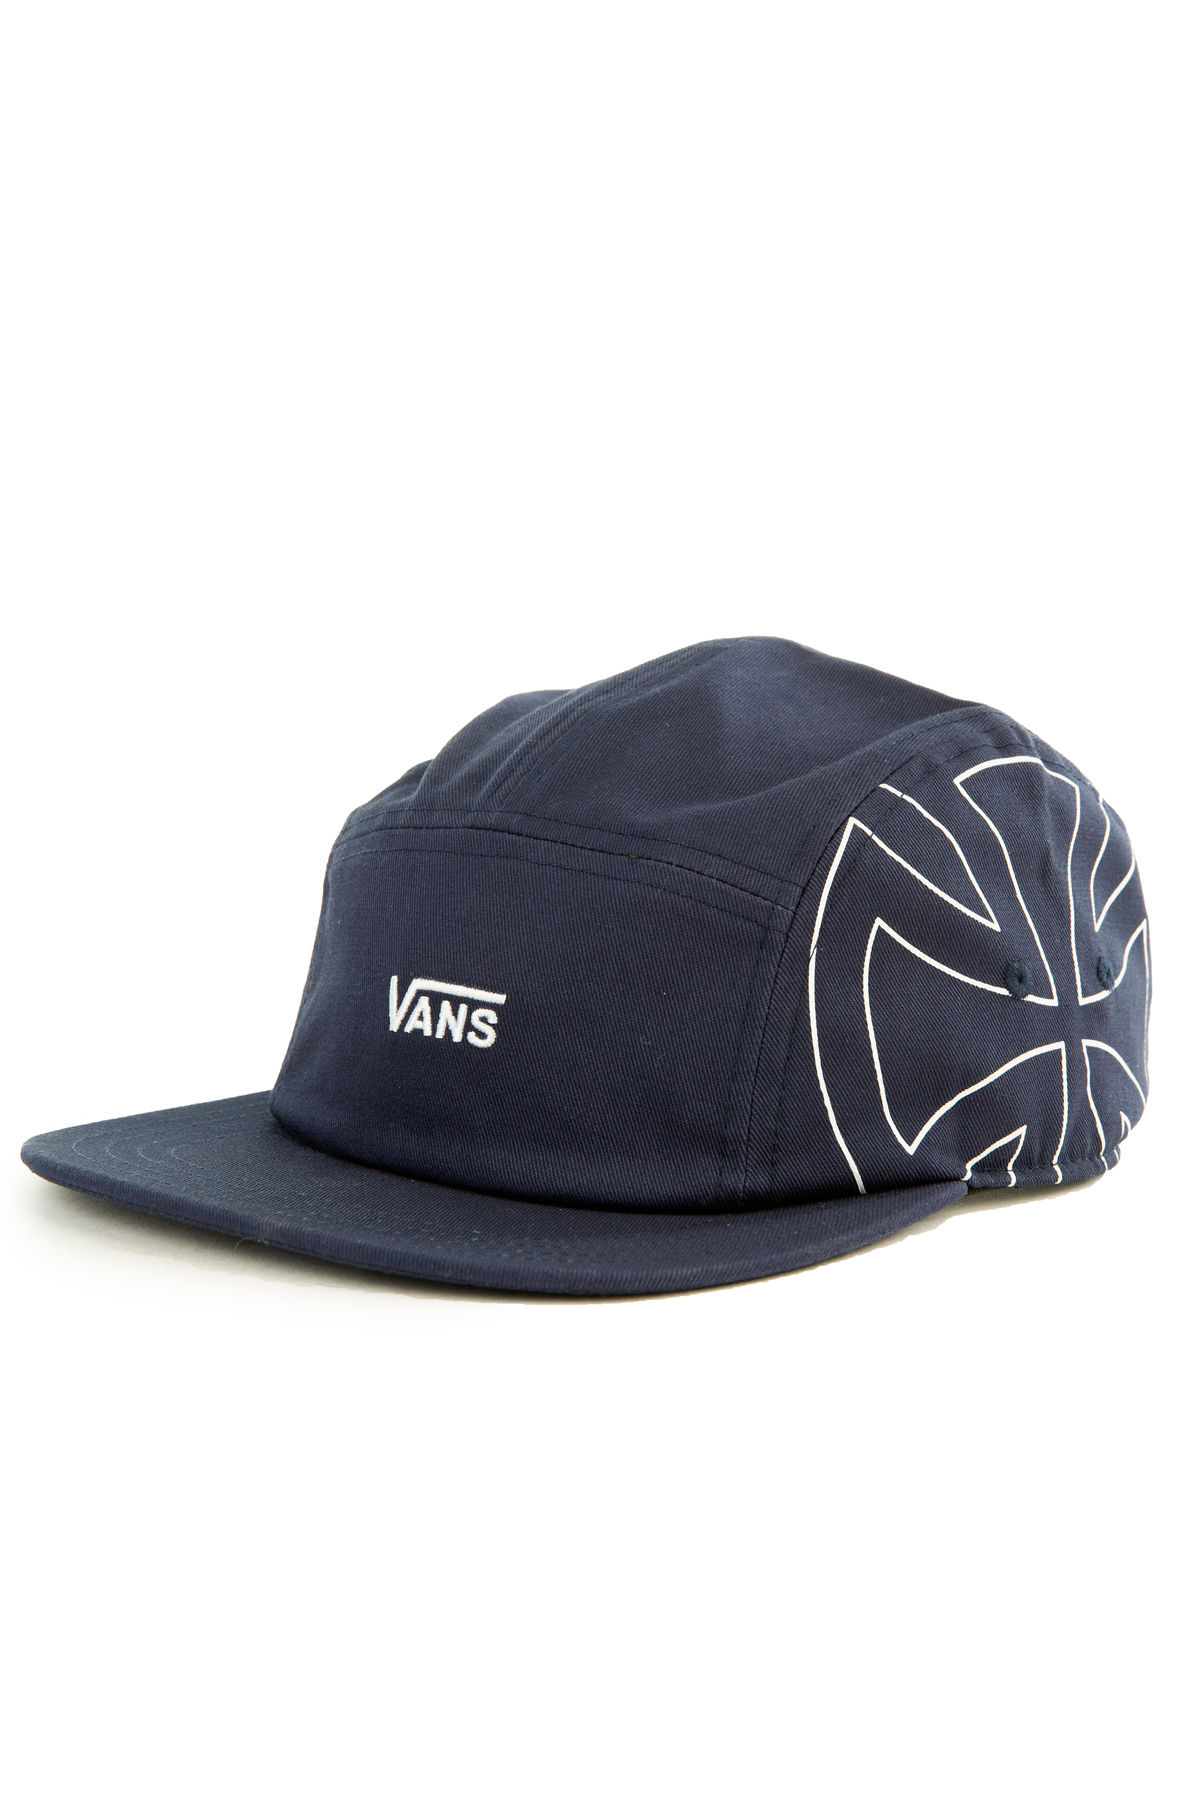 vans independent hat